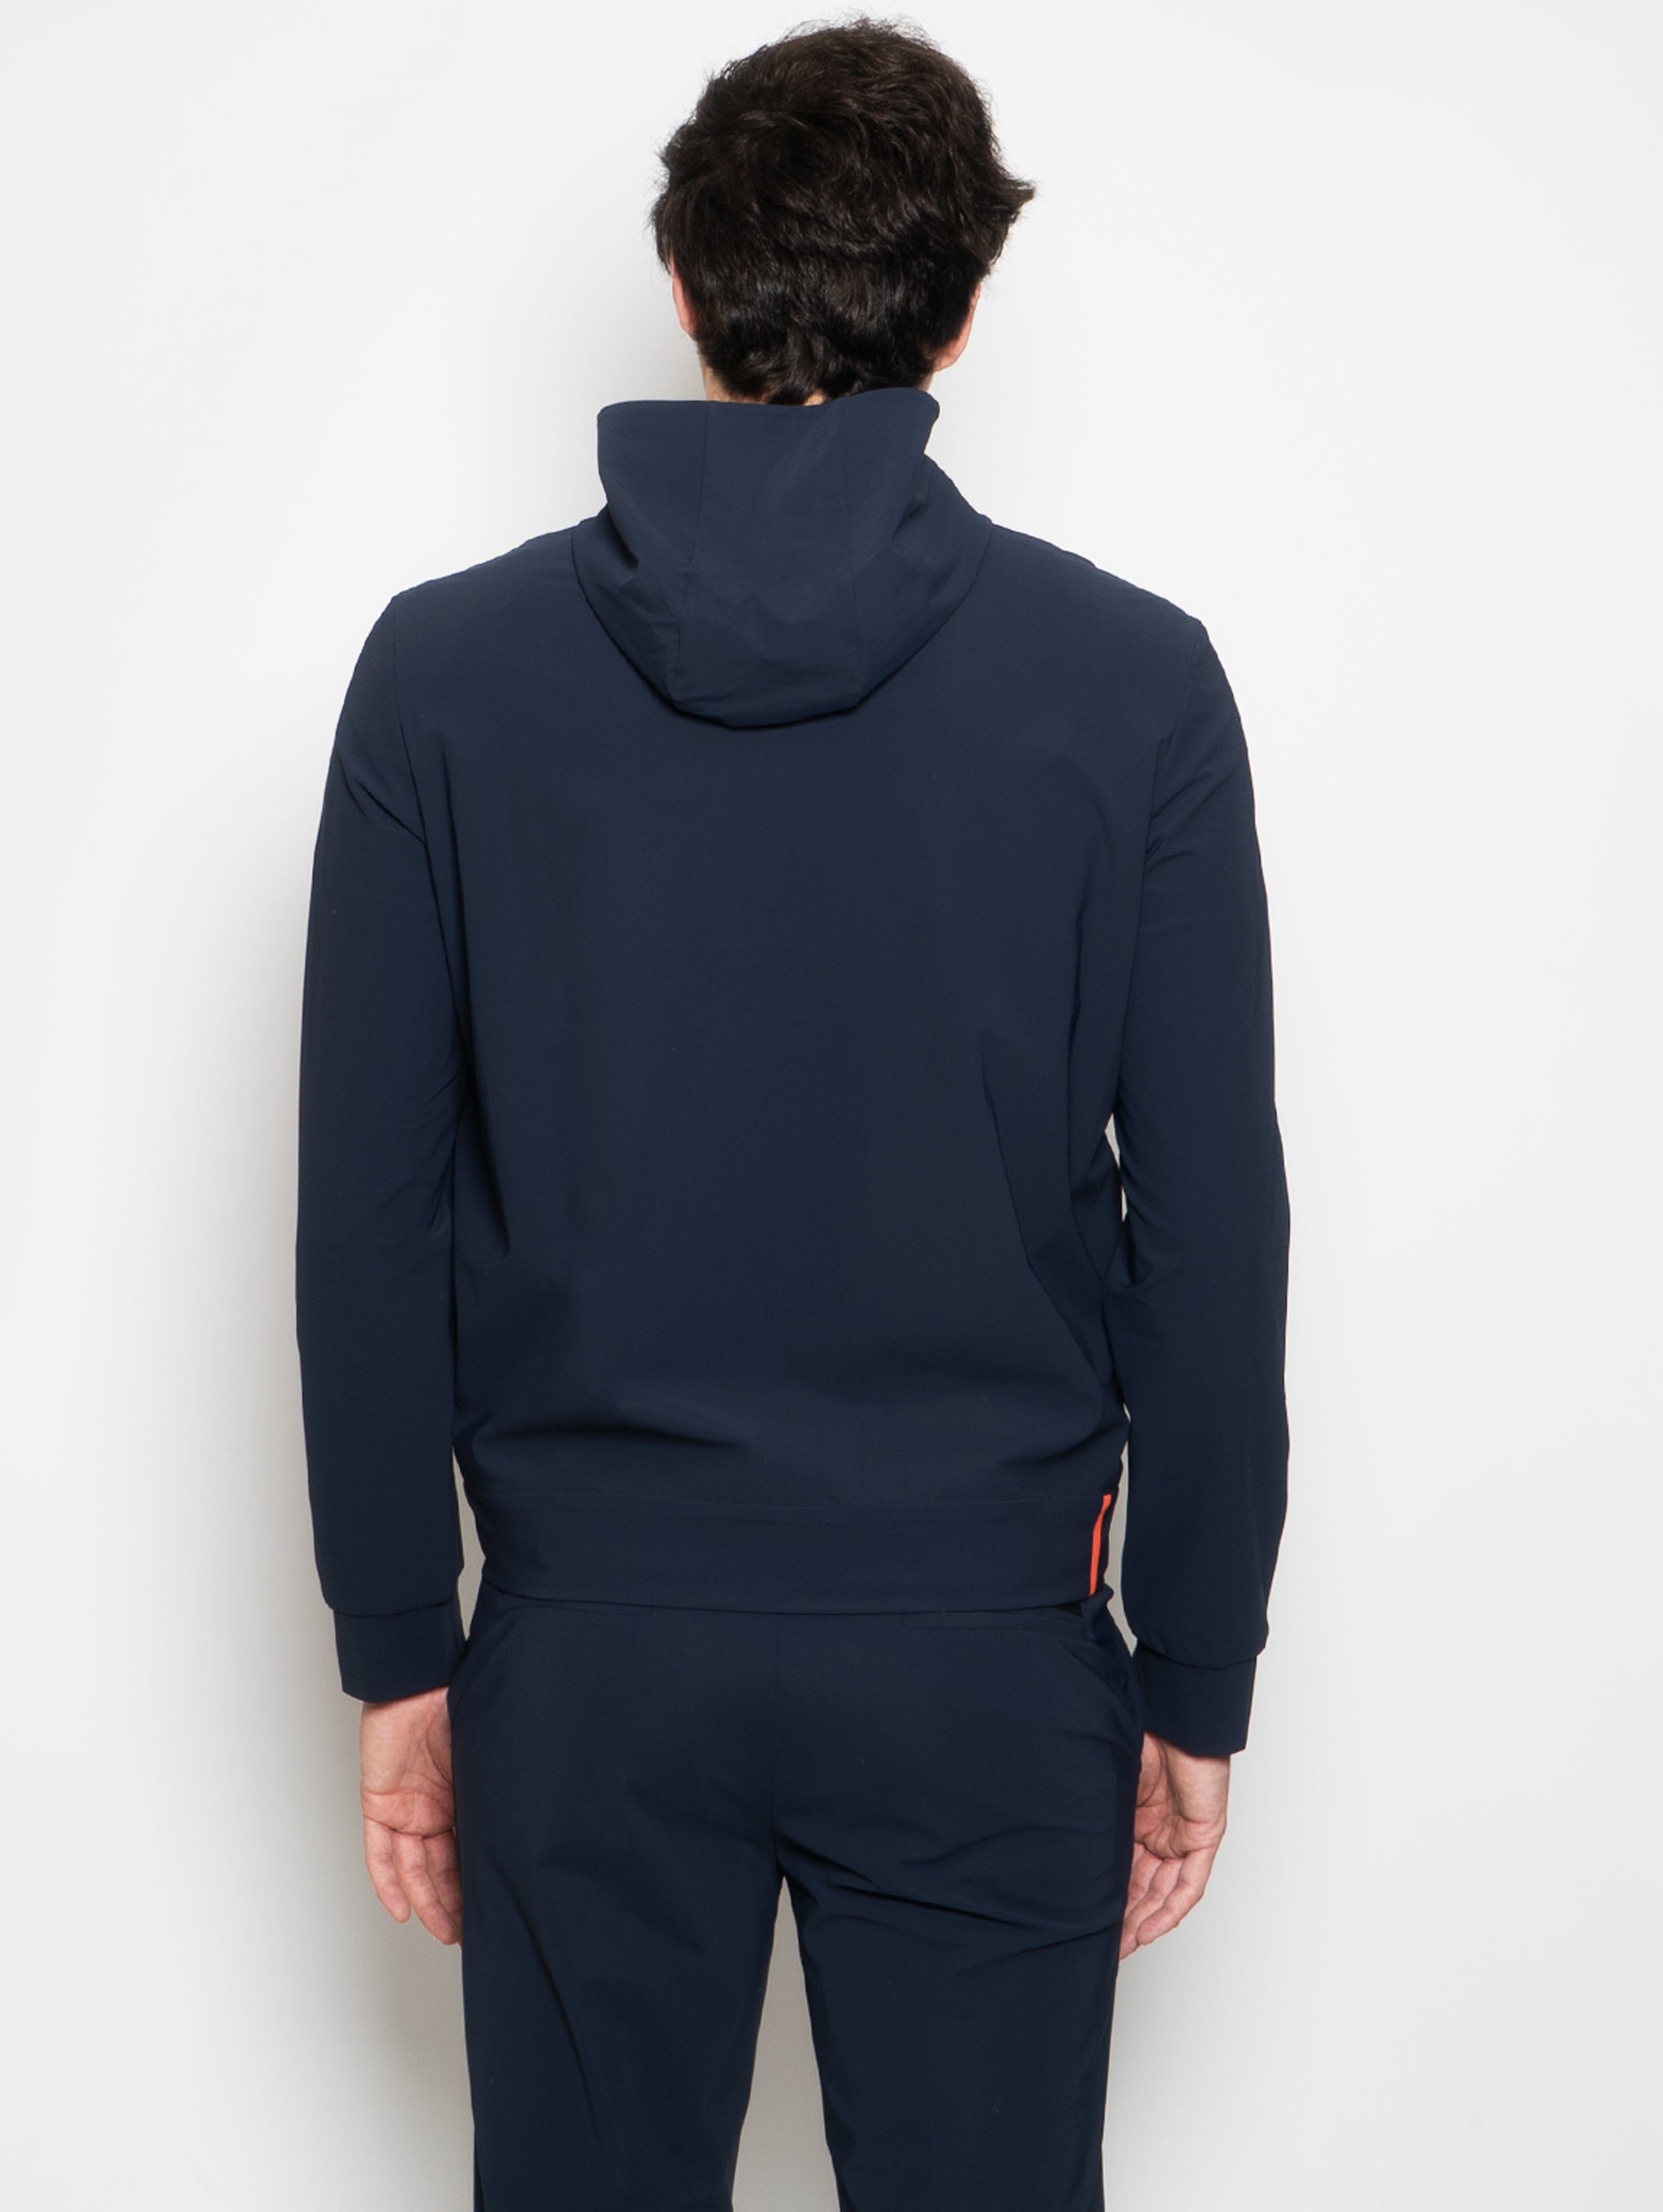 Lycra Sweatshirt with Zip and Blue Hood